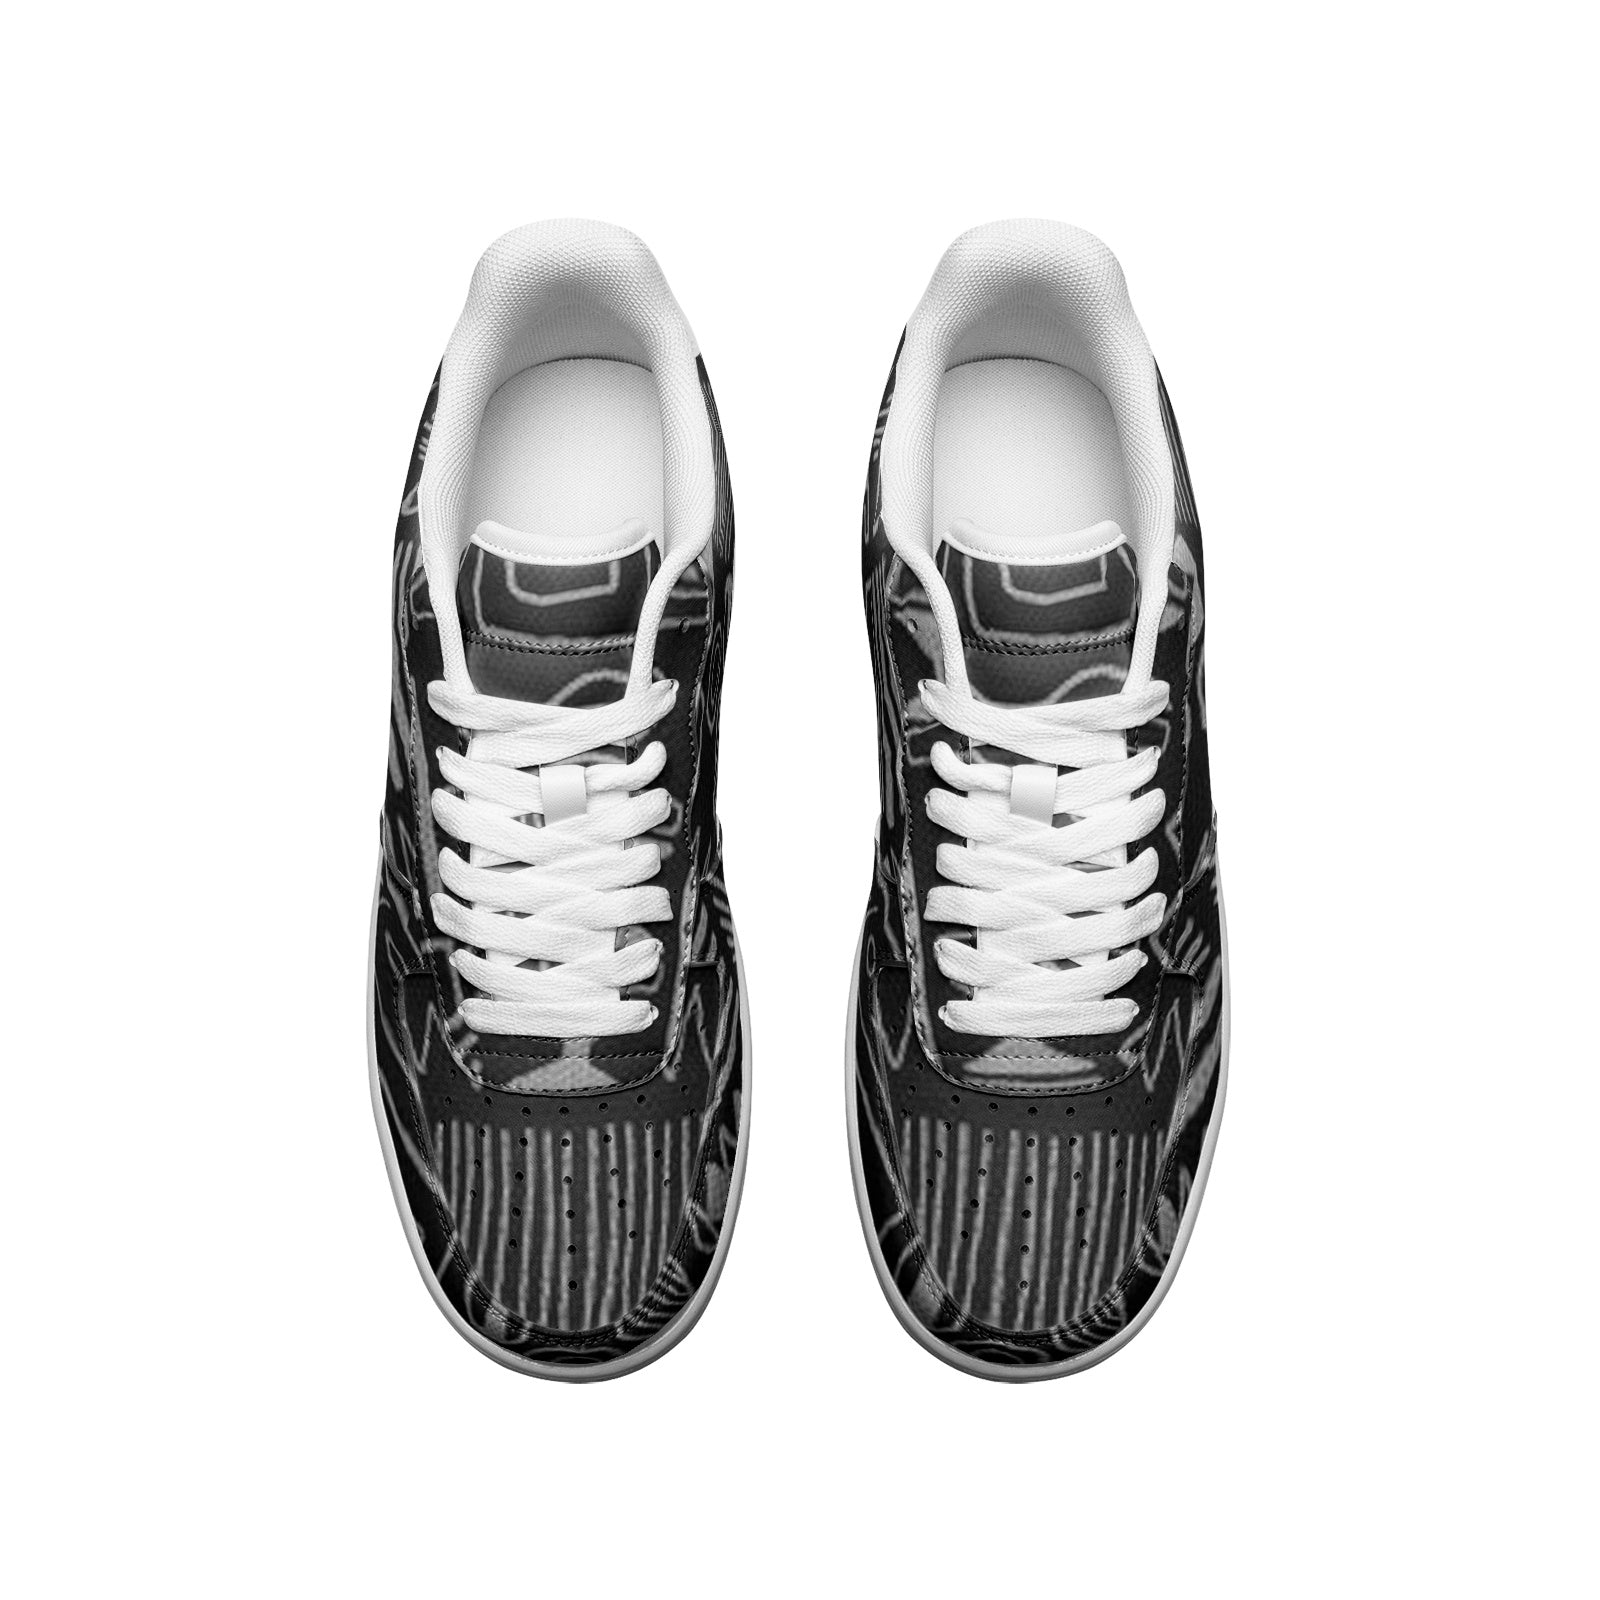 FZ Unisex Low Top Leather Sneakers - FZwear